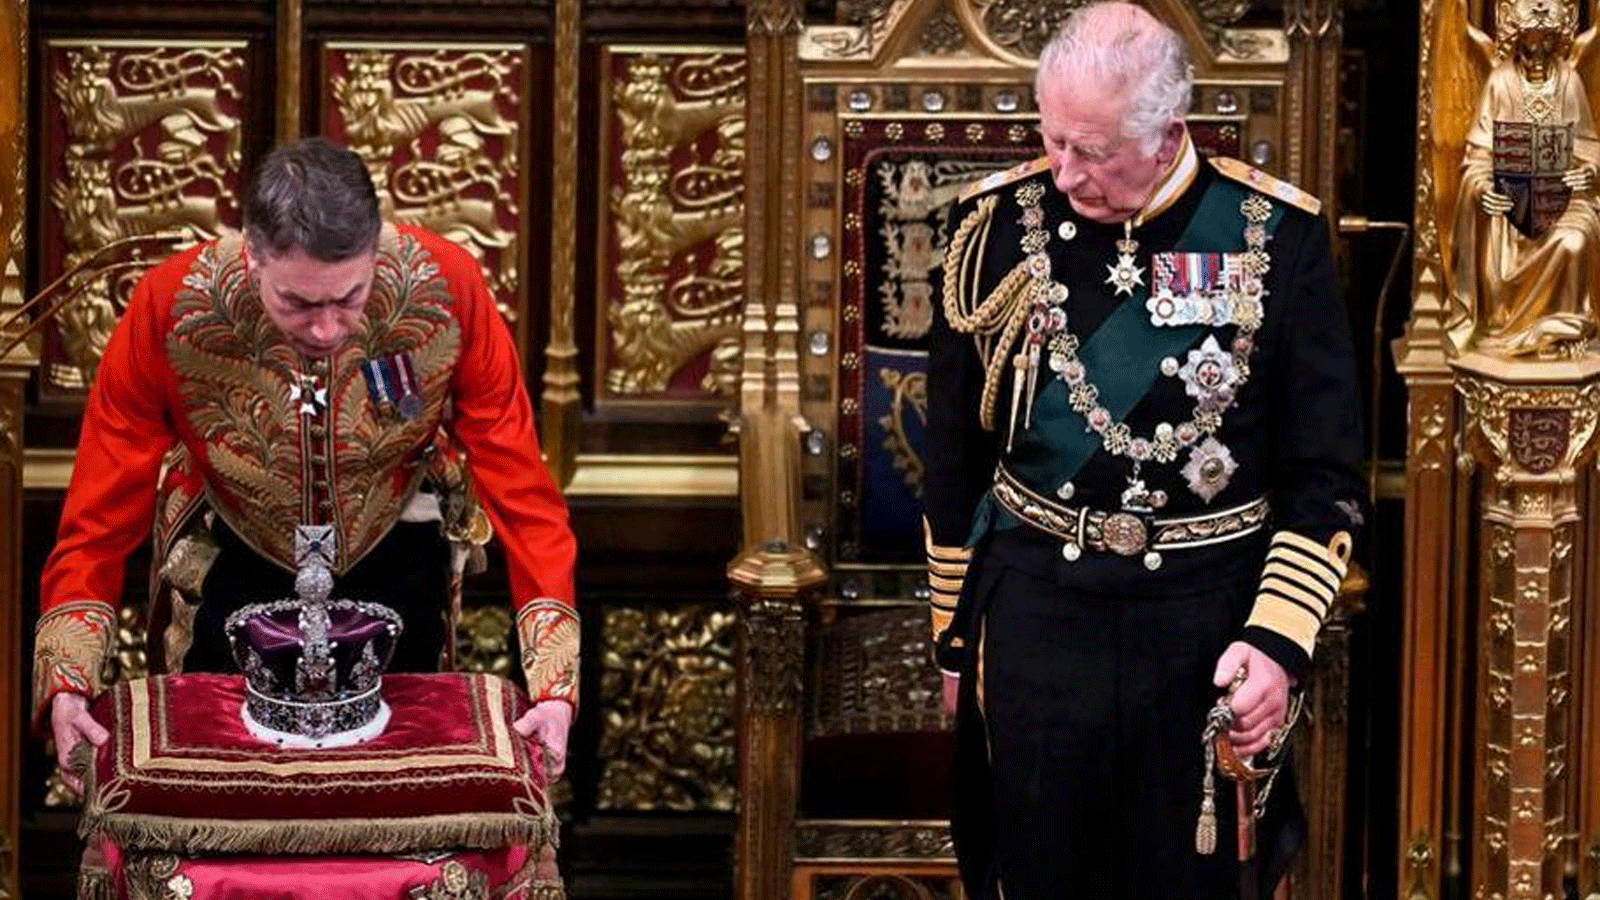 الملك البريطاني تشارلز الثالث ينظر إلى التاج الملكي